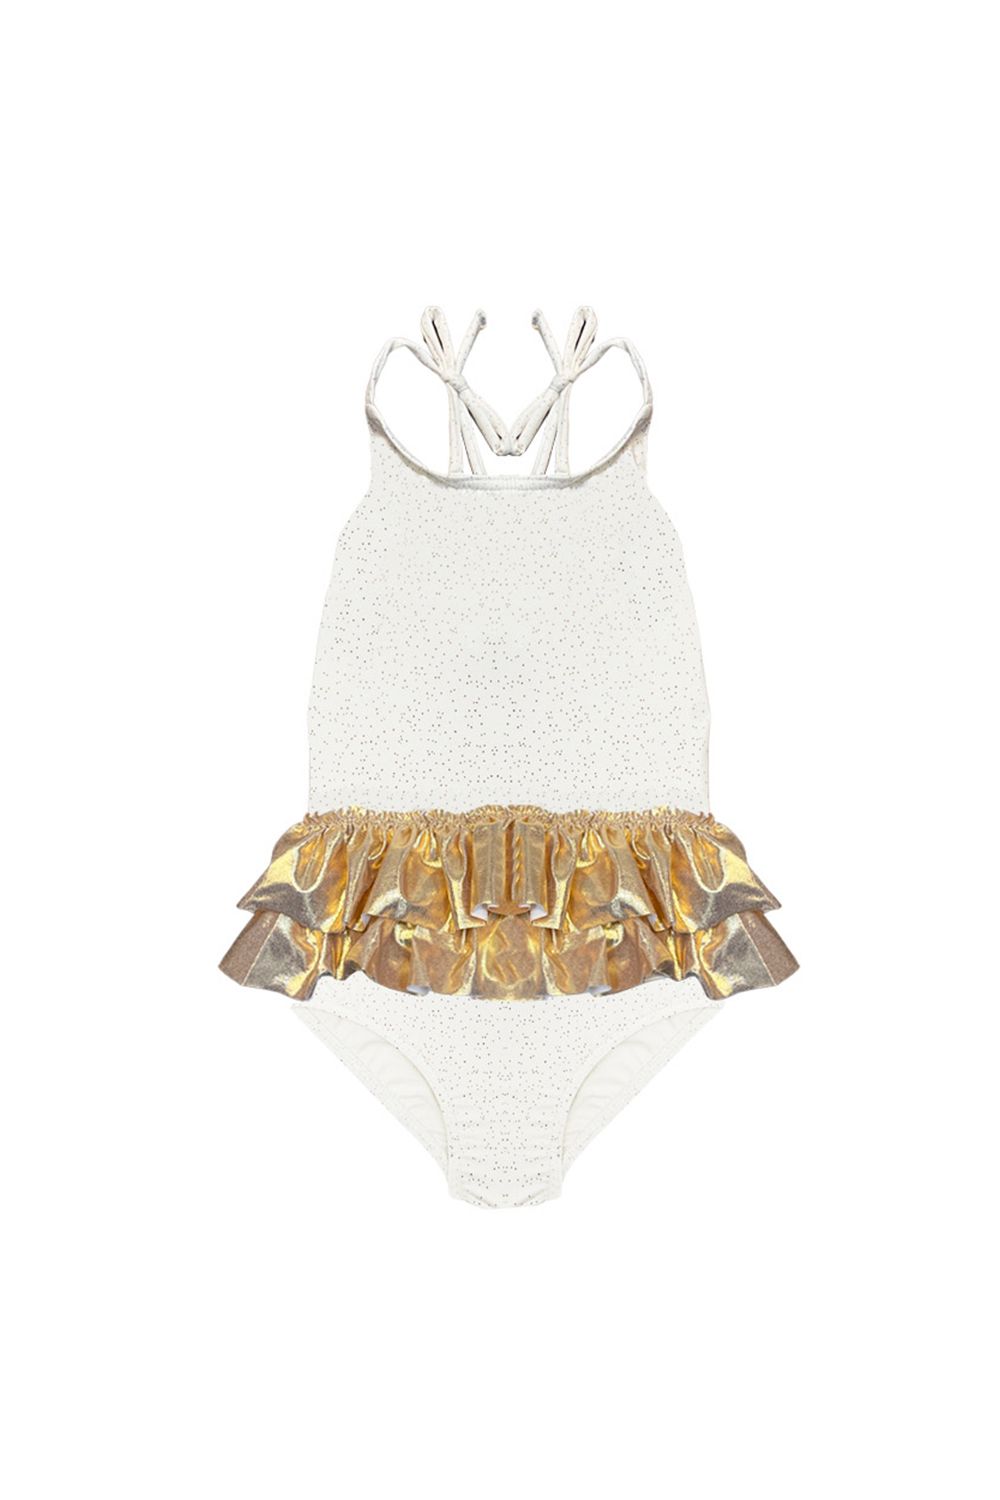 Ivory Capri Baby Dancer Swimsuit